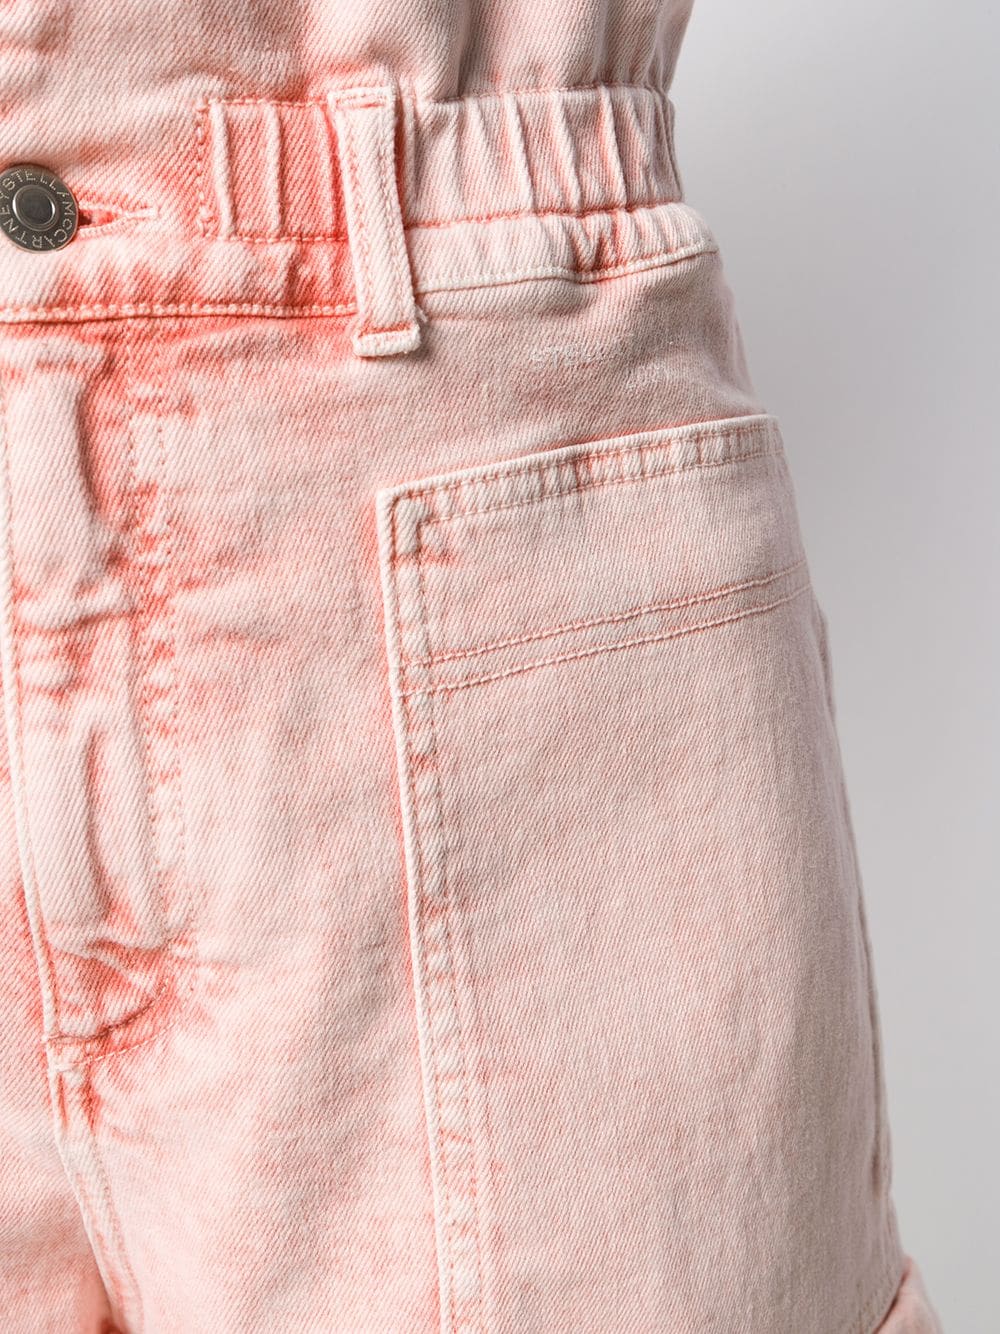 фото Stella mccartney джинсовые шорты с эффектом потертости